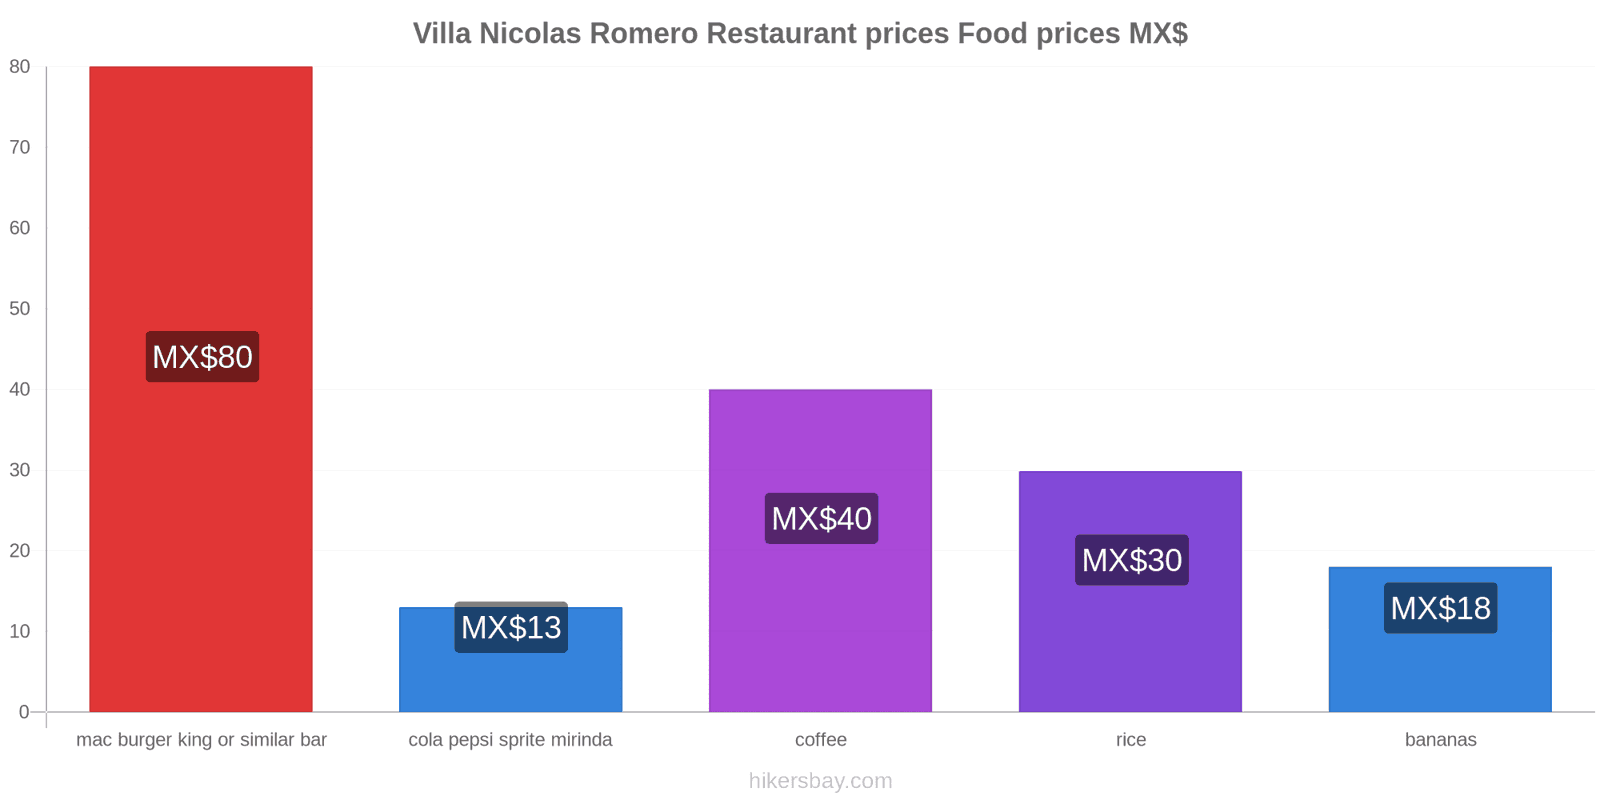 Villa Nicolas Romero price changes hikersbay.com